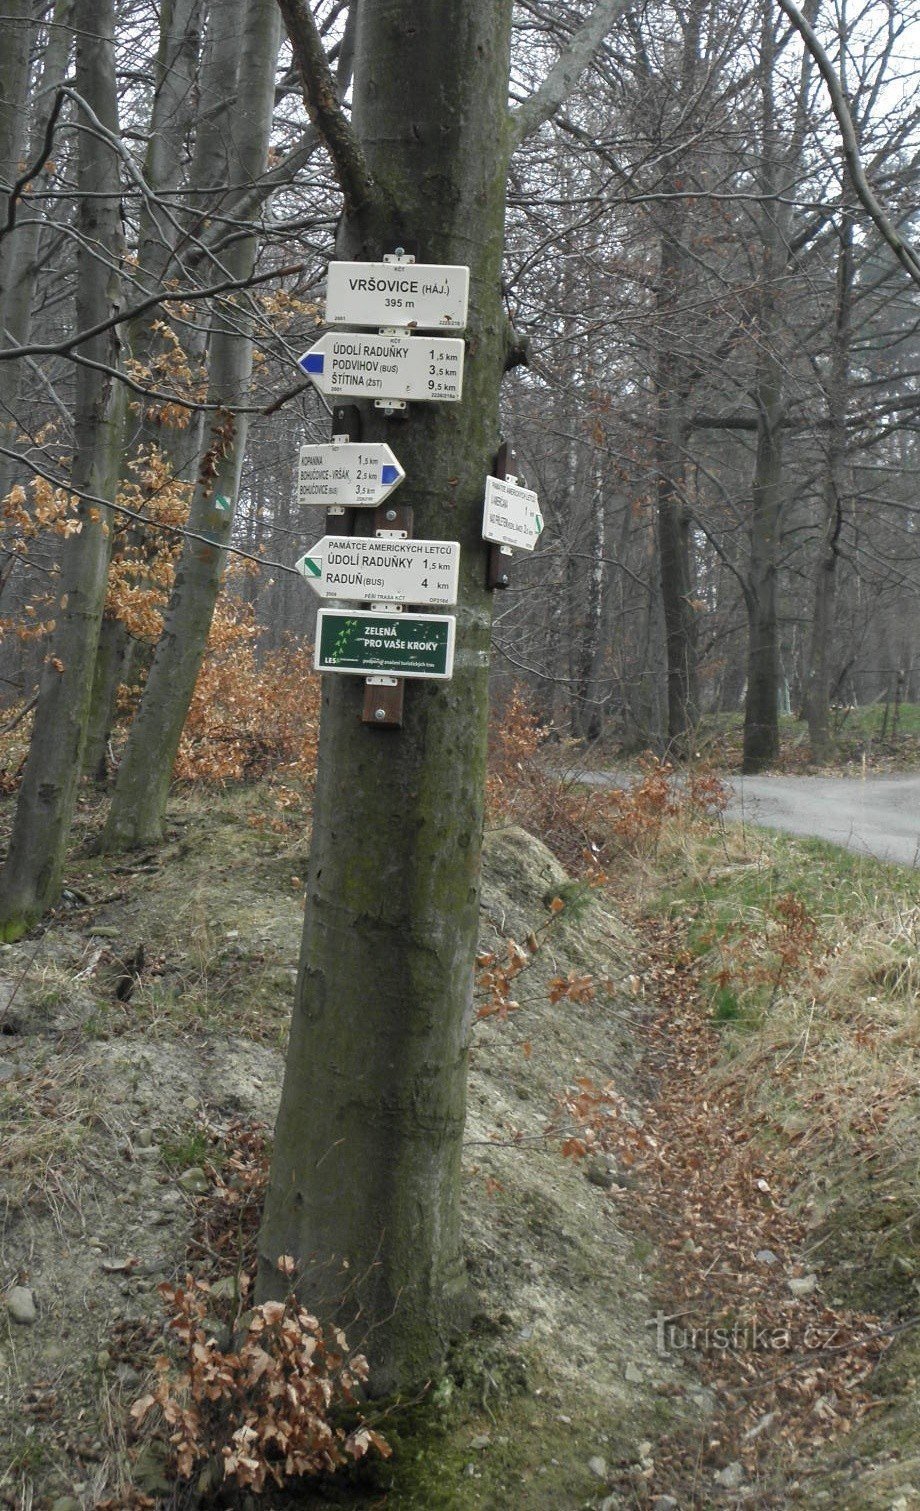 Kruispunt van het Vršovice-bos, algemeen zicht